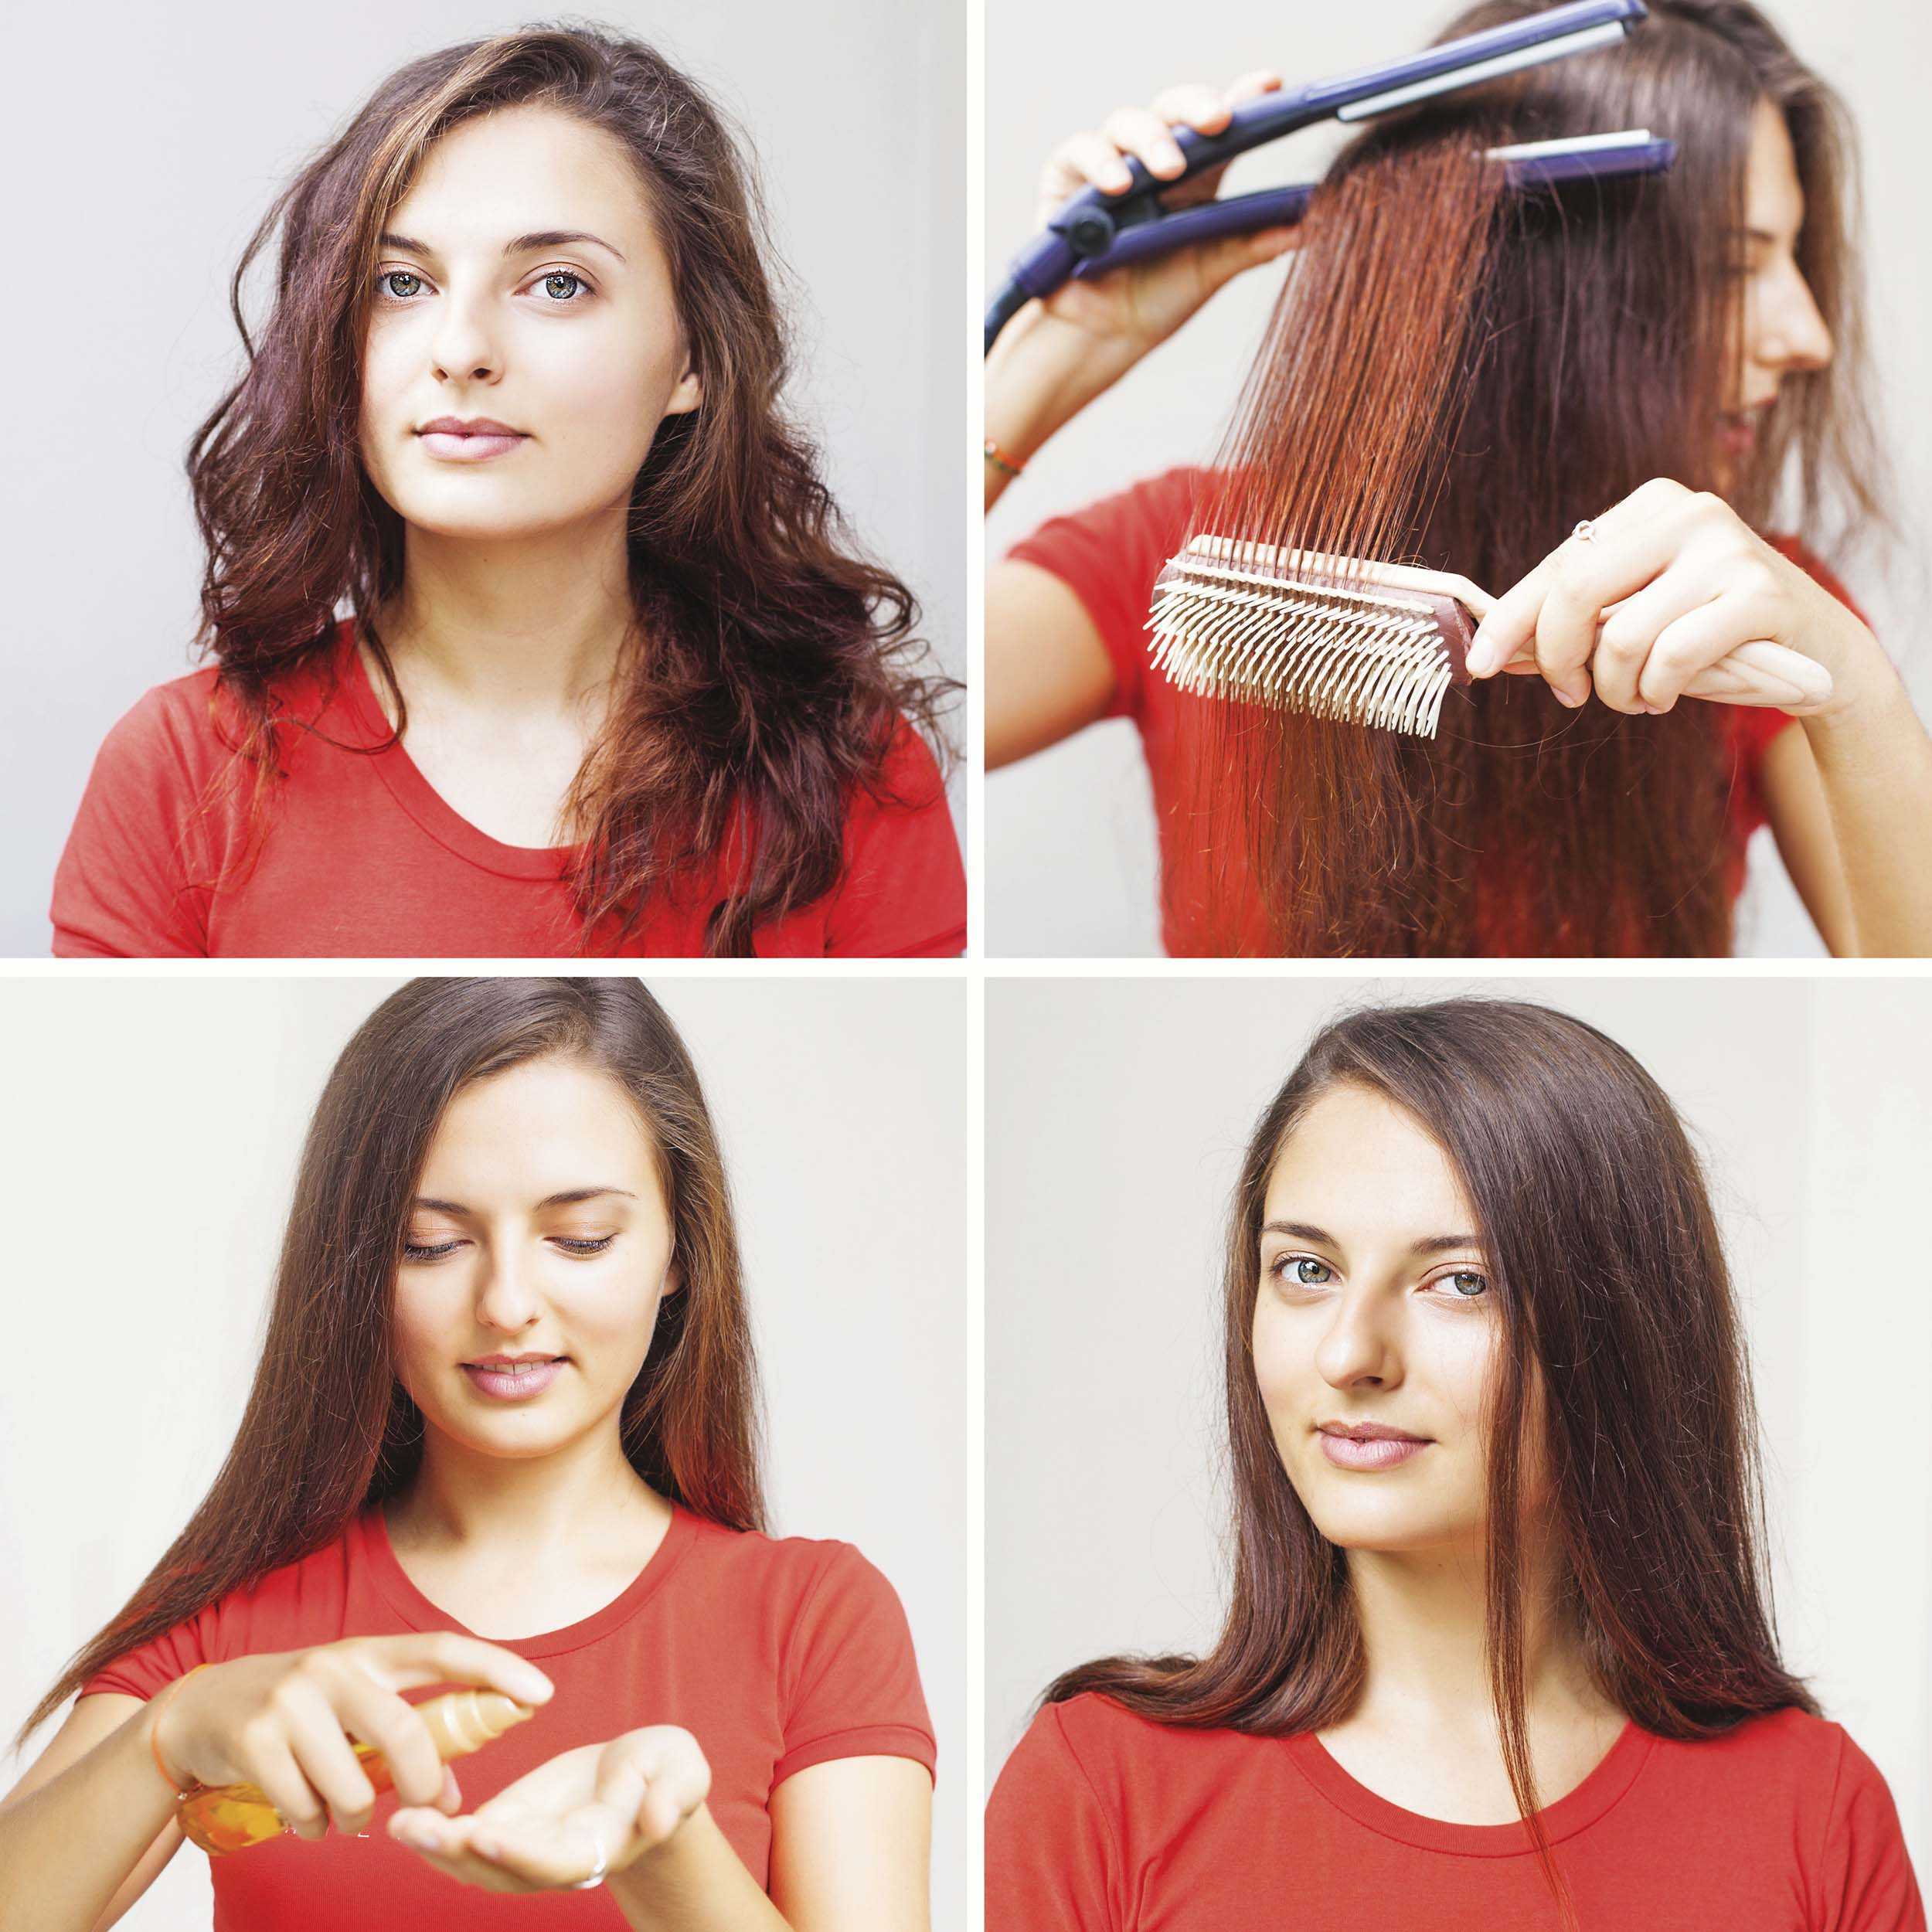 Как выпрямить волосы без утюжка, фена и других приборов в домашних условиях: быстро, правильно, надолго, пошаговая инструкция, фото до и после